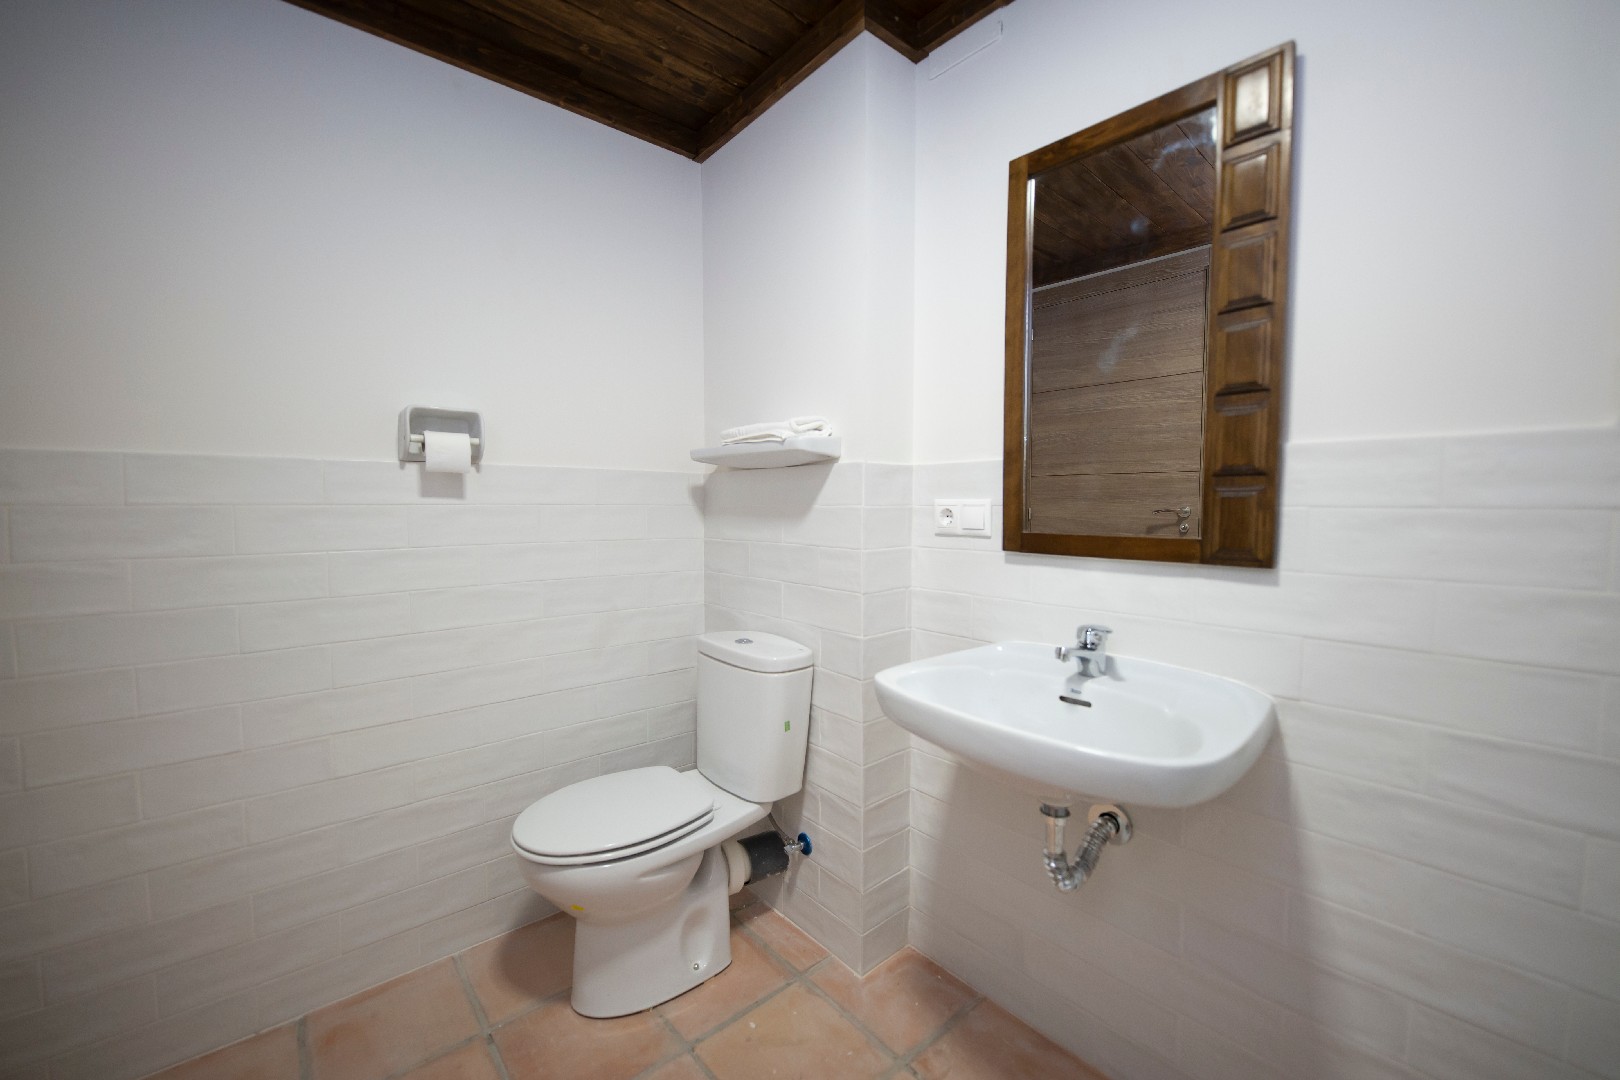 Casa Rural Pradas en Montanejos - Casas rurales en alquiler en Montanejos,  Comunidad Valenciana, España - Airbnb